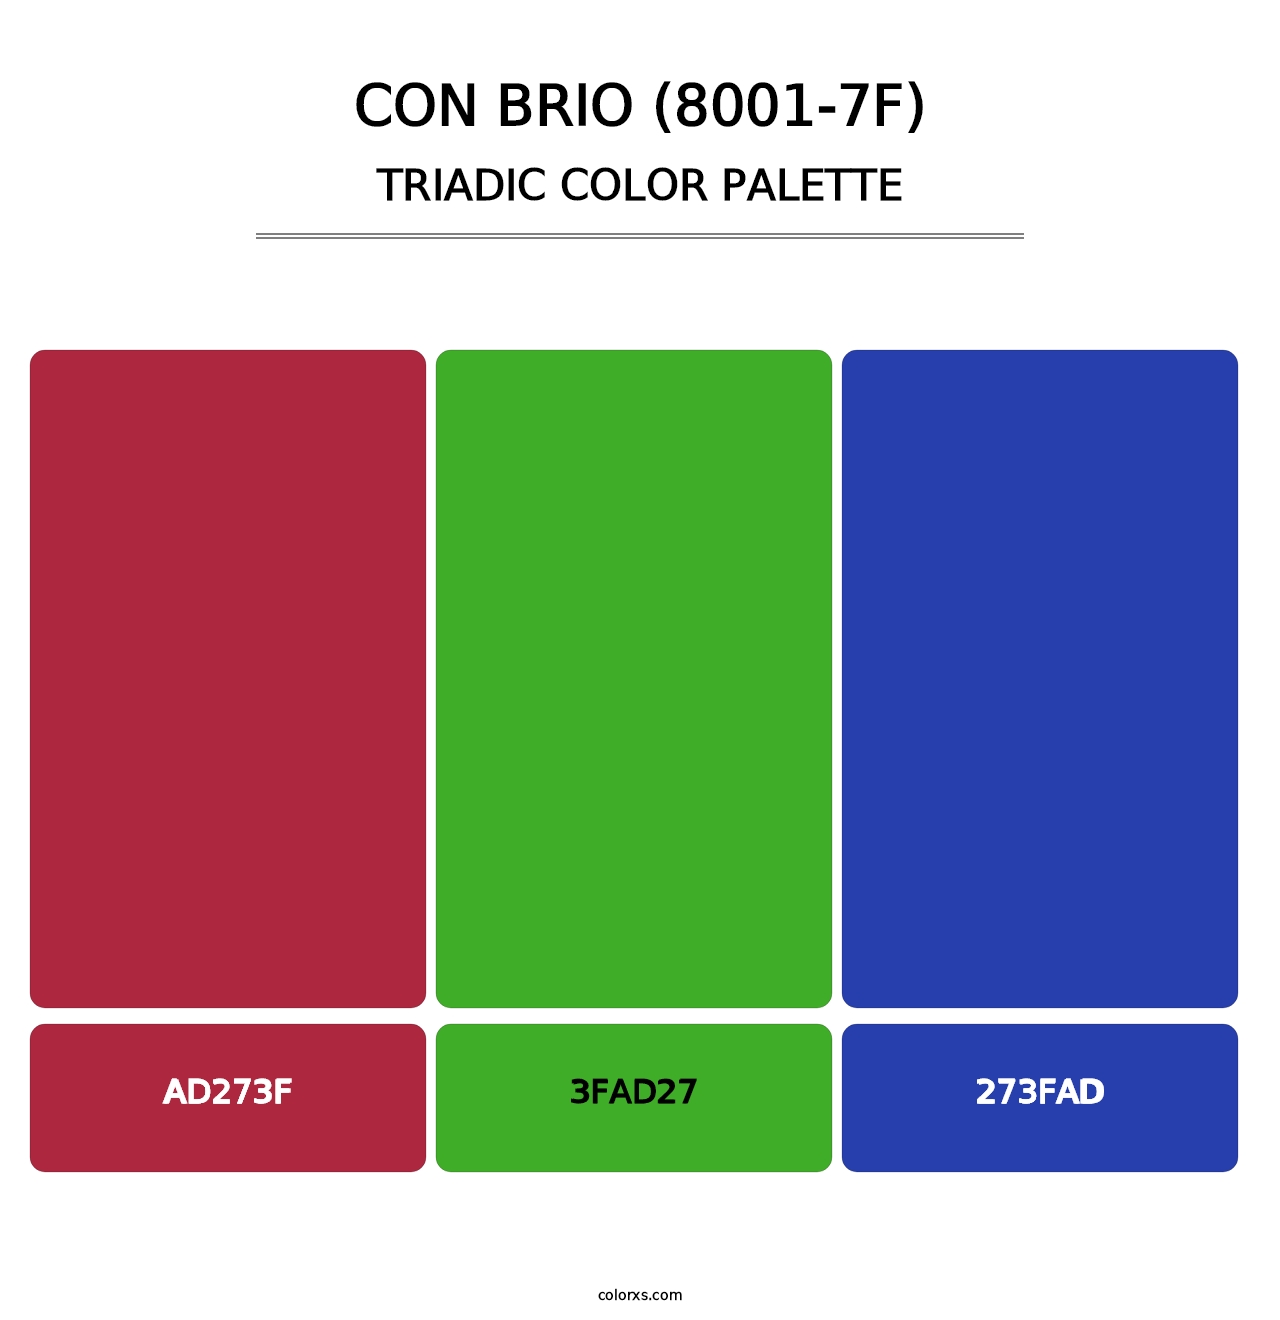 Con Brio (8001-7F) - Triadic Color Palette